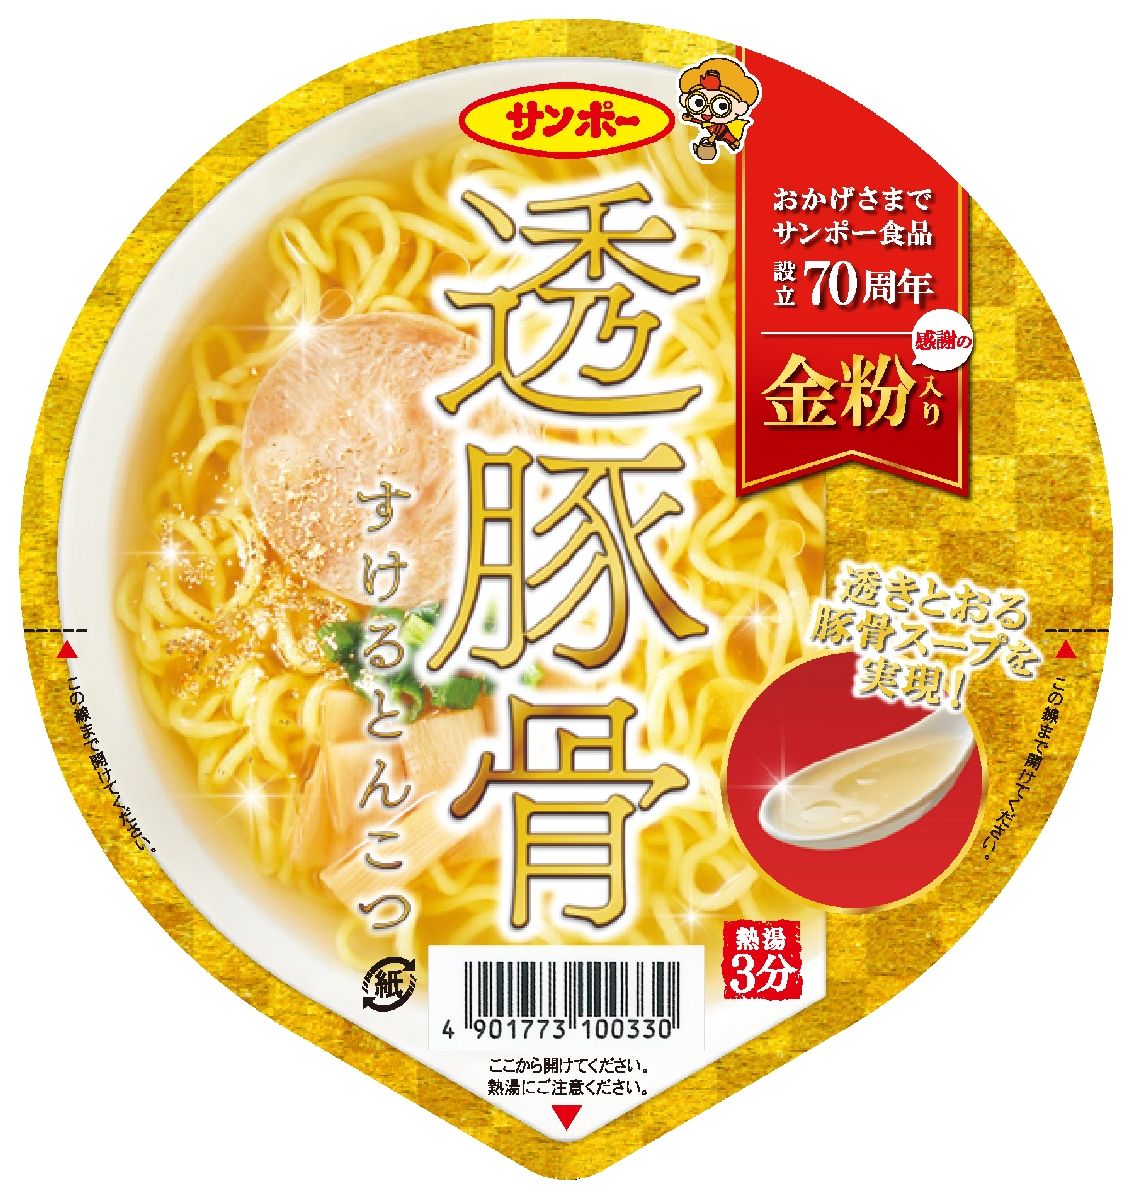 透明豚骨スープのカップ麺 サンポー食品が限定販売 「とんこつラーメン ...